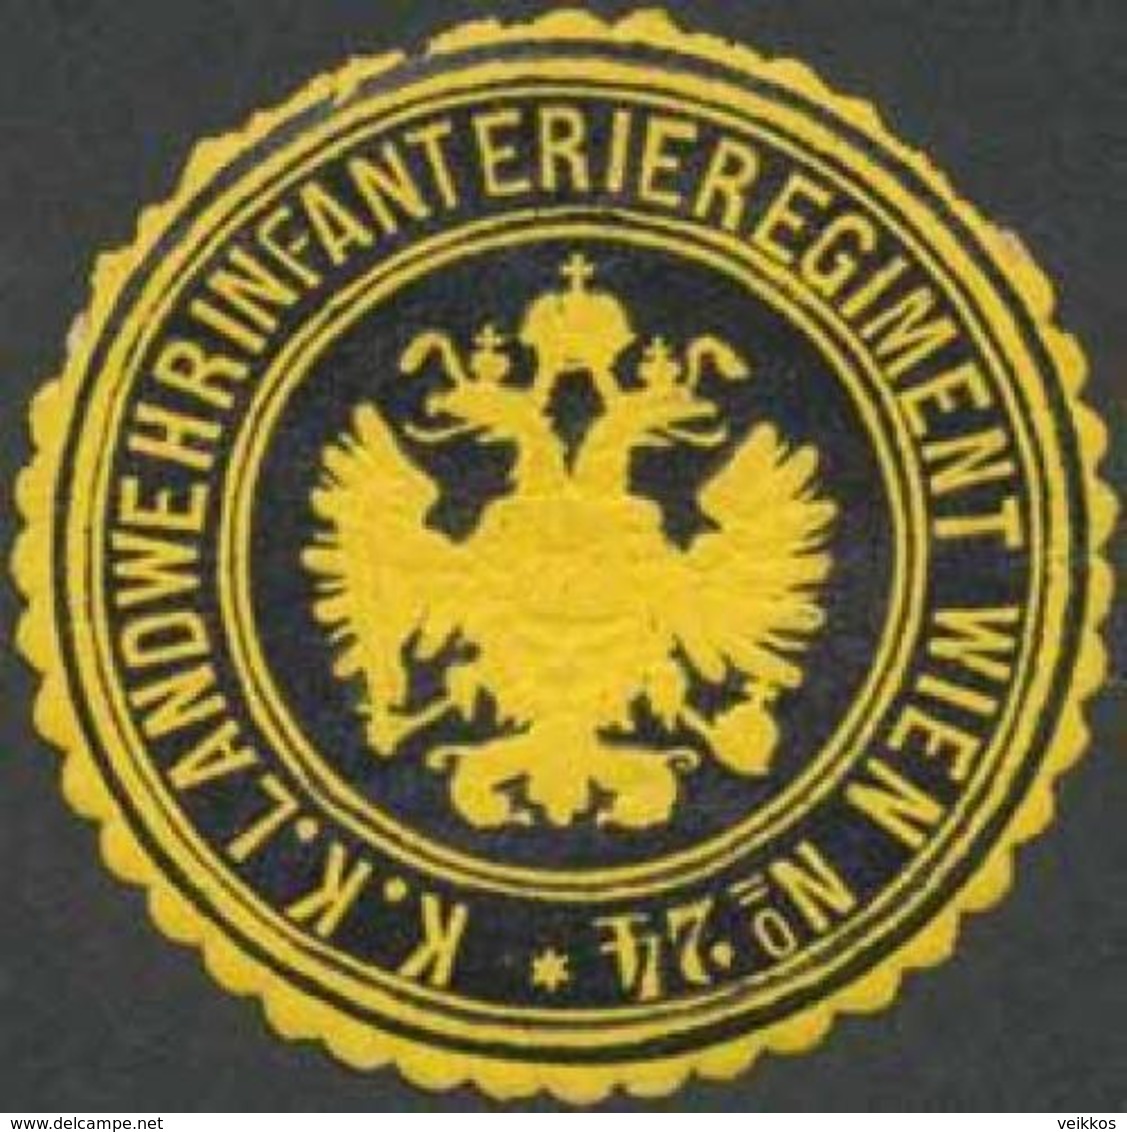 Wien: K.K. Landwehrinfanterieregiment Wien No. 42 Siegelmarke - Erinnophilie